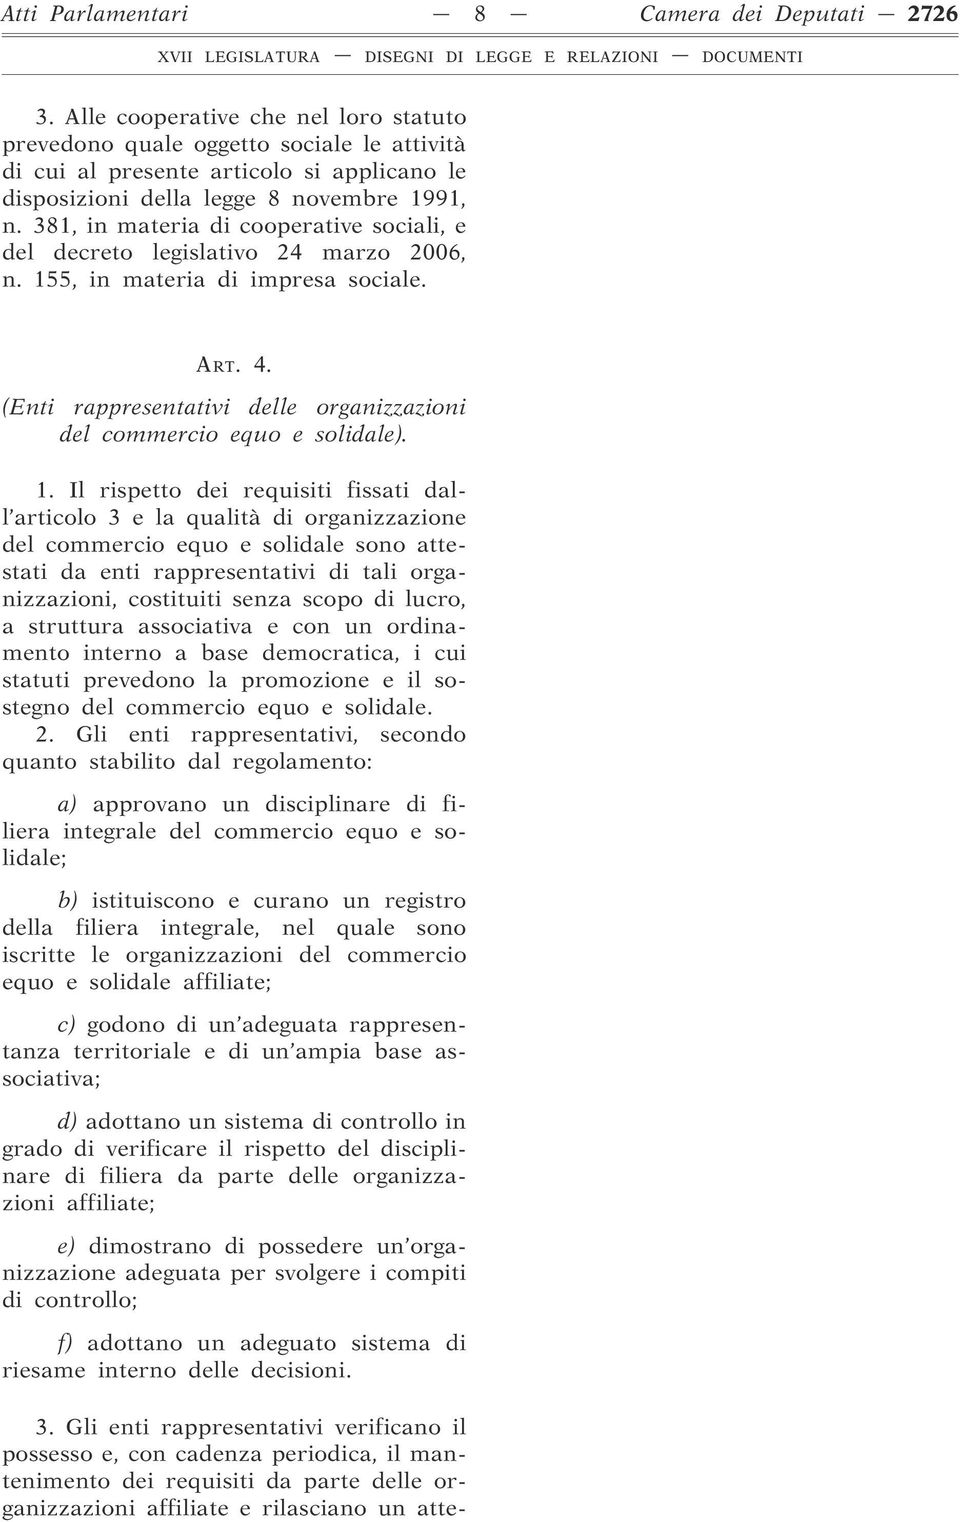 381, in materia di cooperative sociali, e del decreto legislativo 24 marzo 2006, n. 155, in materia di impresa sociale. ART. 4.